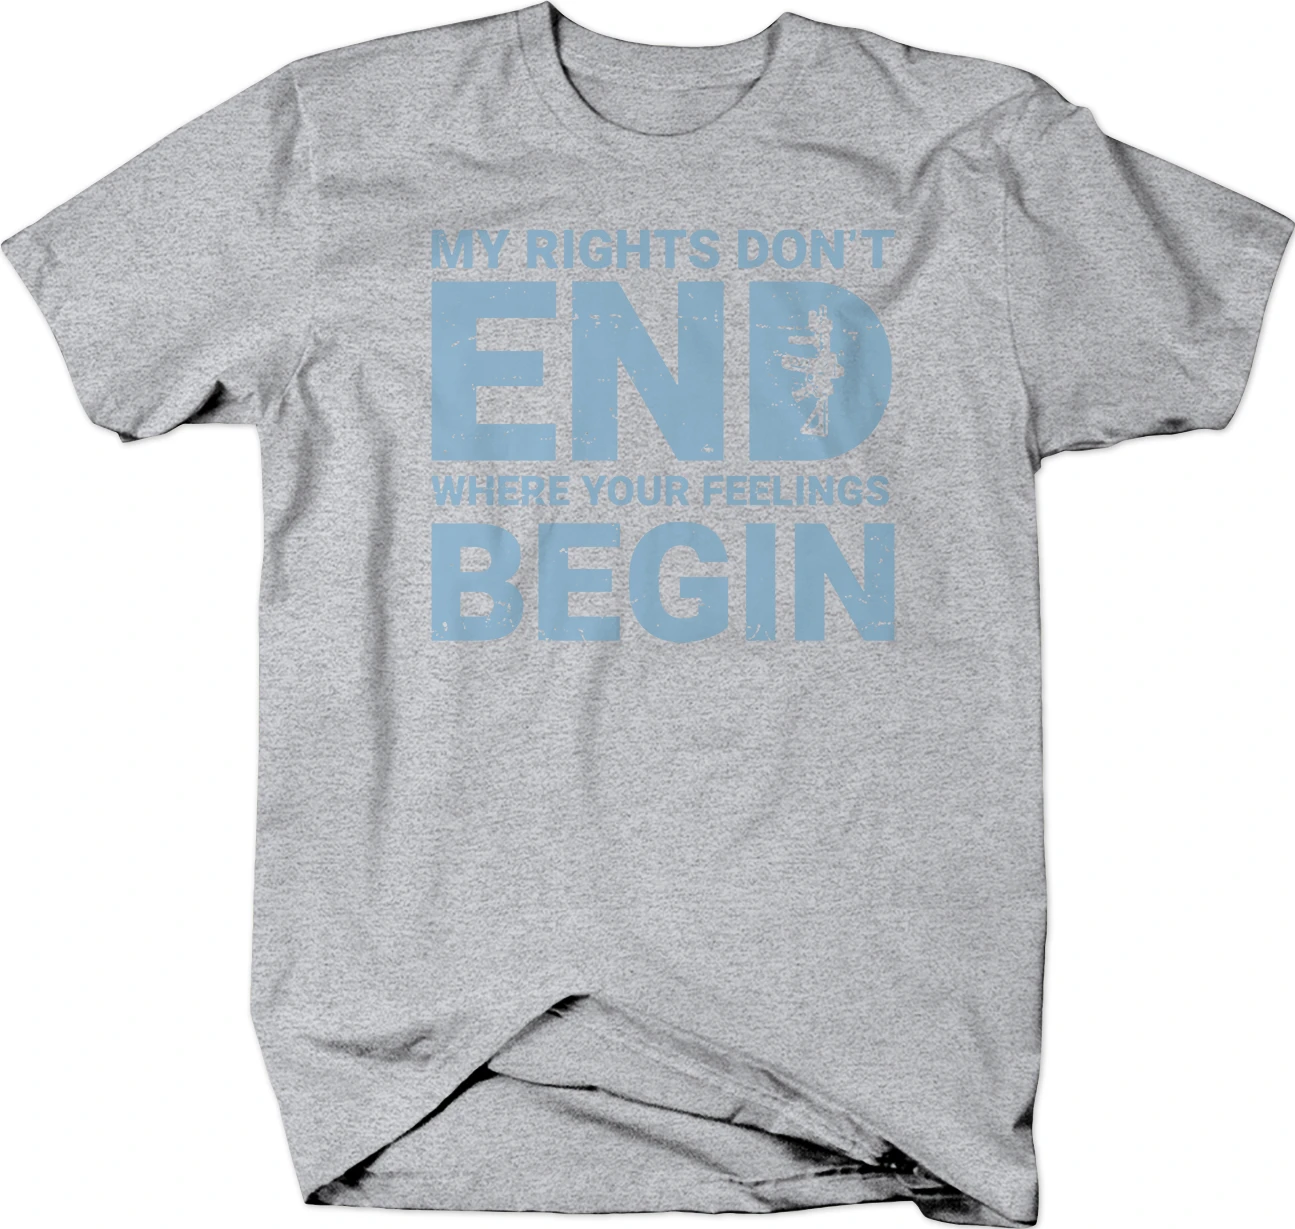 Мужская футболка с надписью My Rifle модная Right Don't End Where Your Feelings 2019 Футболки 